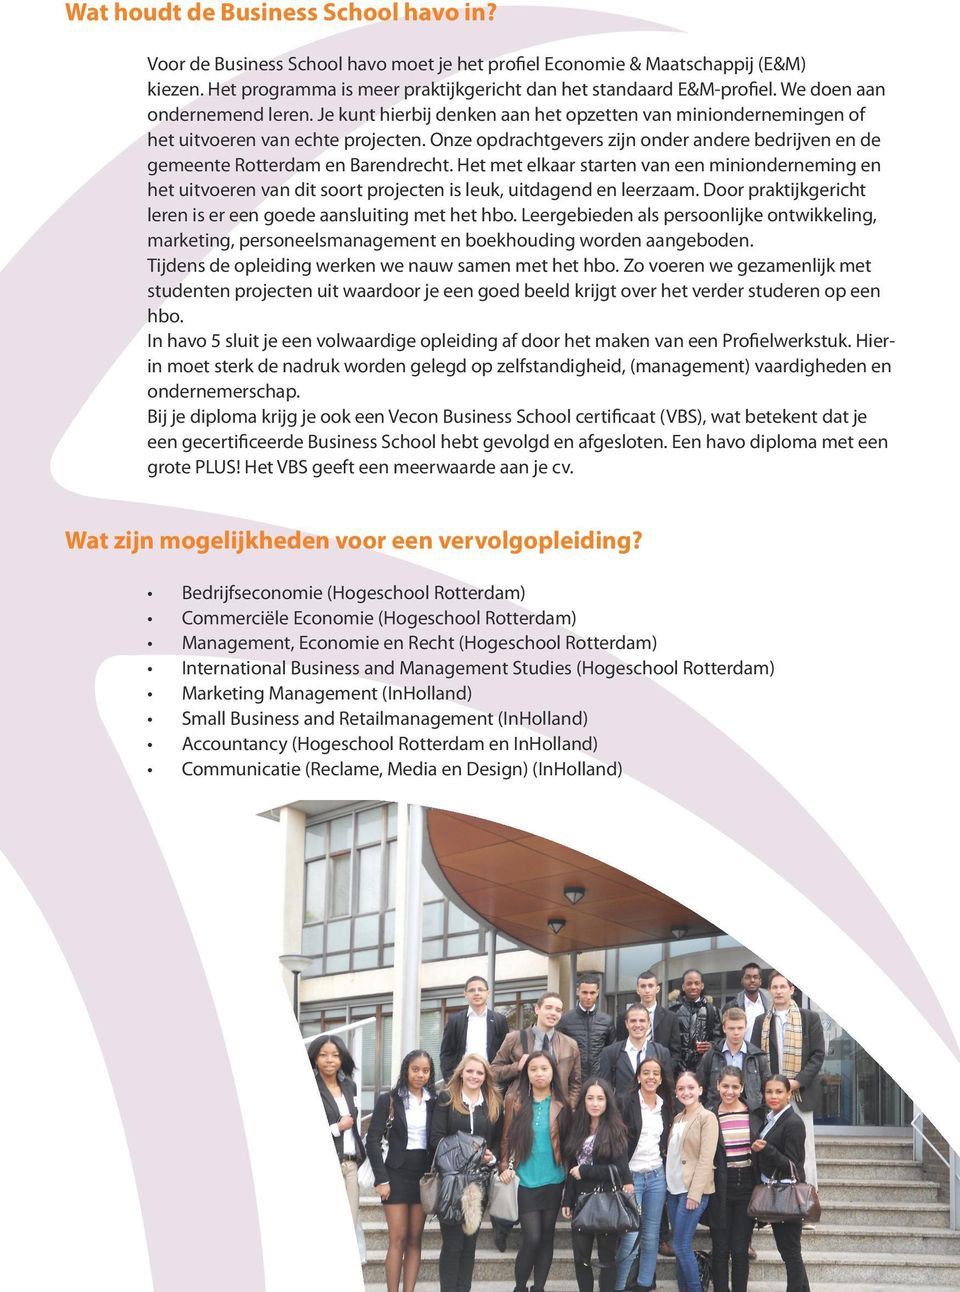 Onze opdrachtgevers zijn onder andere bedrijven en de gemeente Rotterdam en Barendrecht.